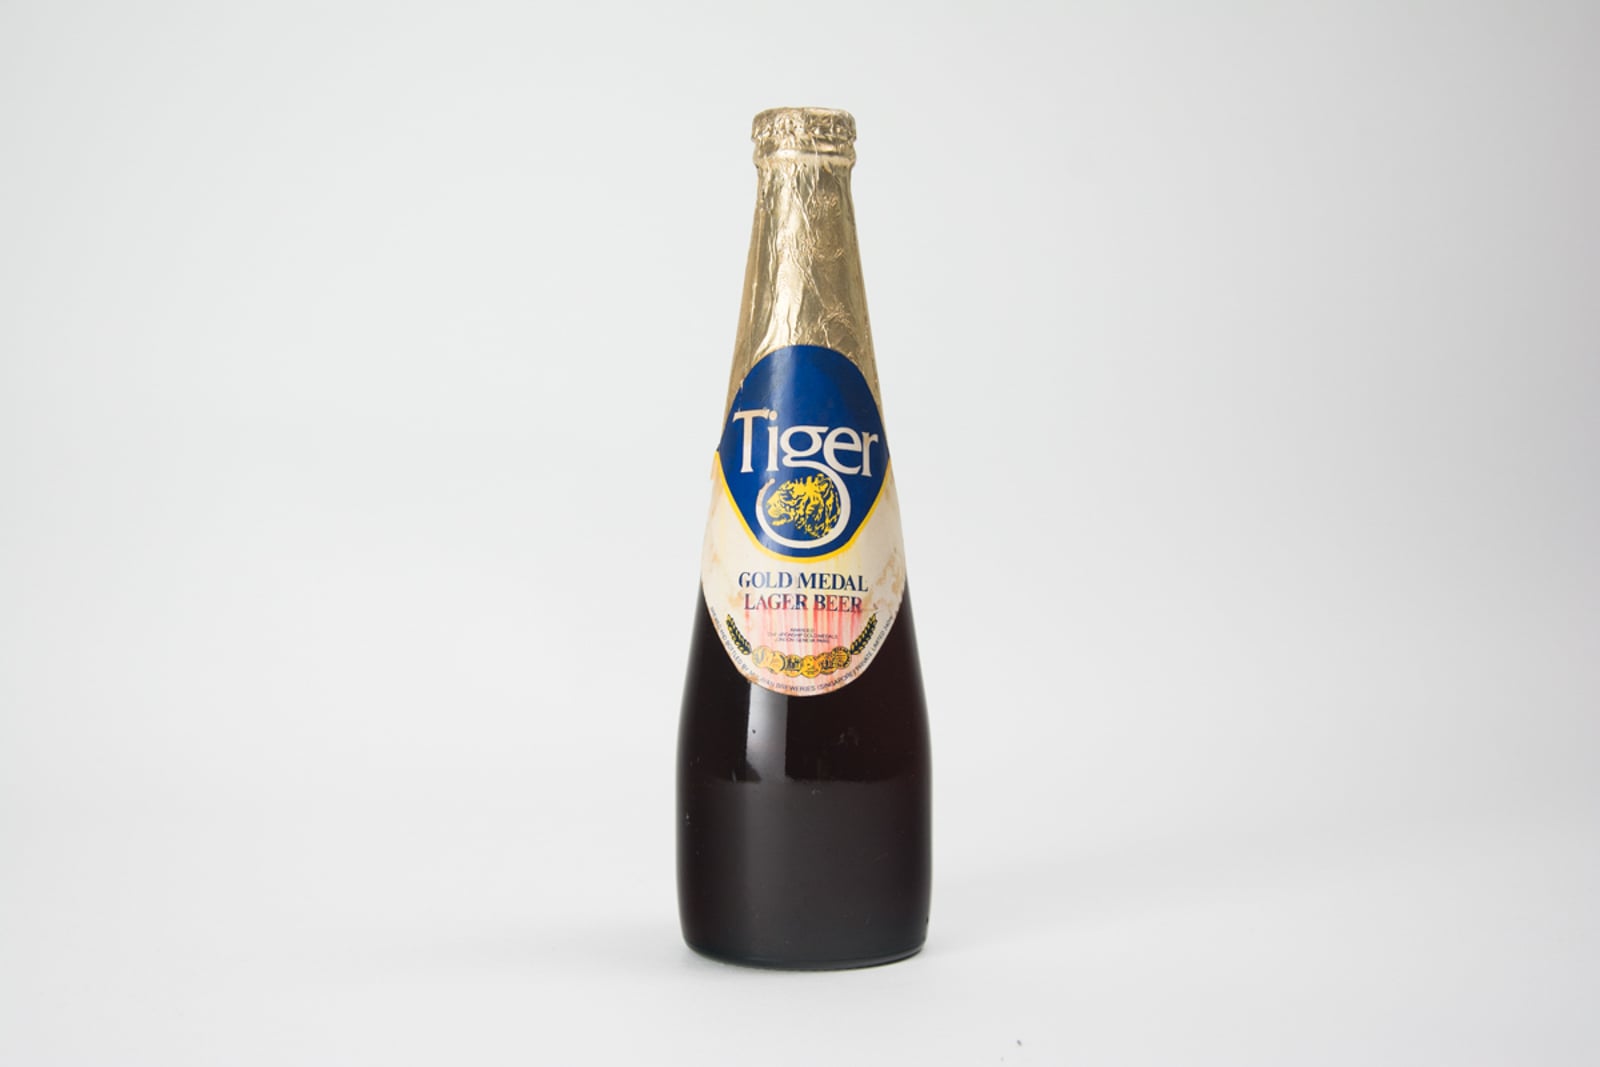 Tiger Gold Medal Lager Beer Vintage Bottle, 340 ml